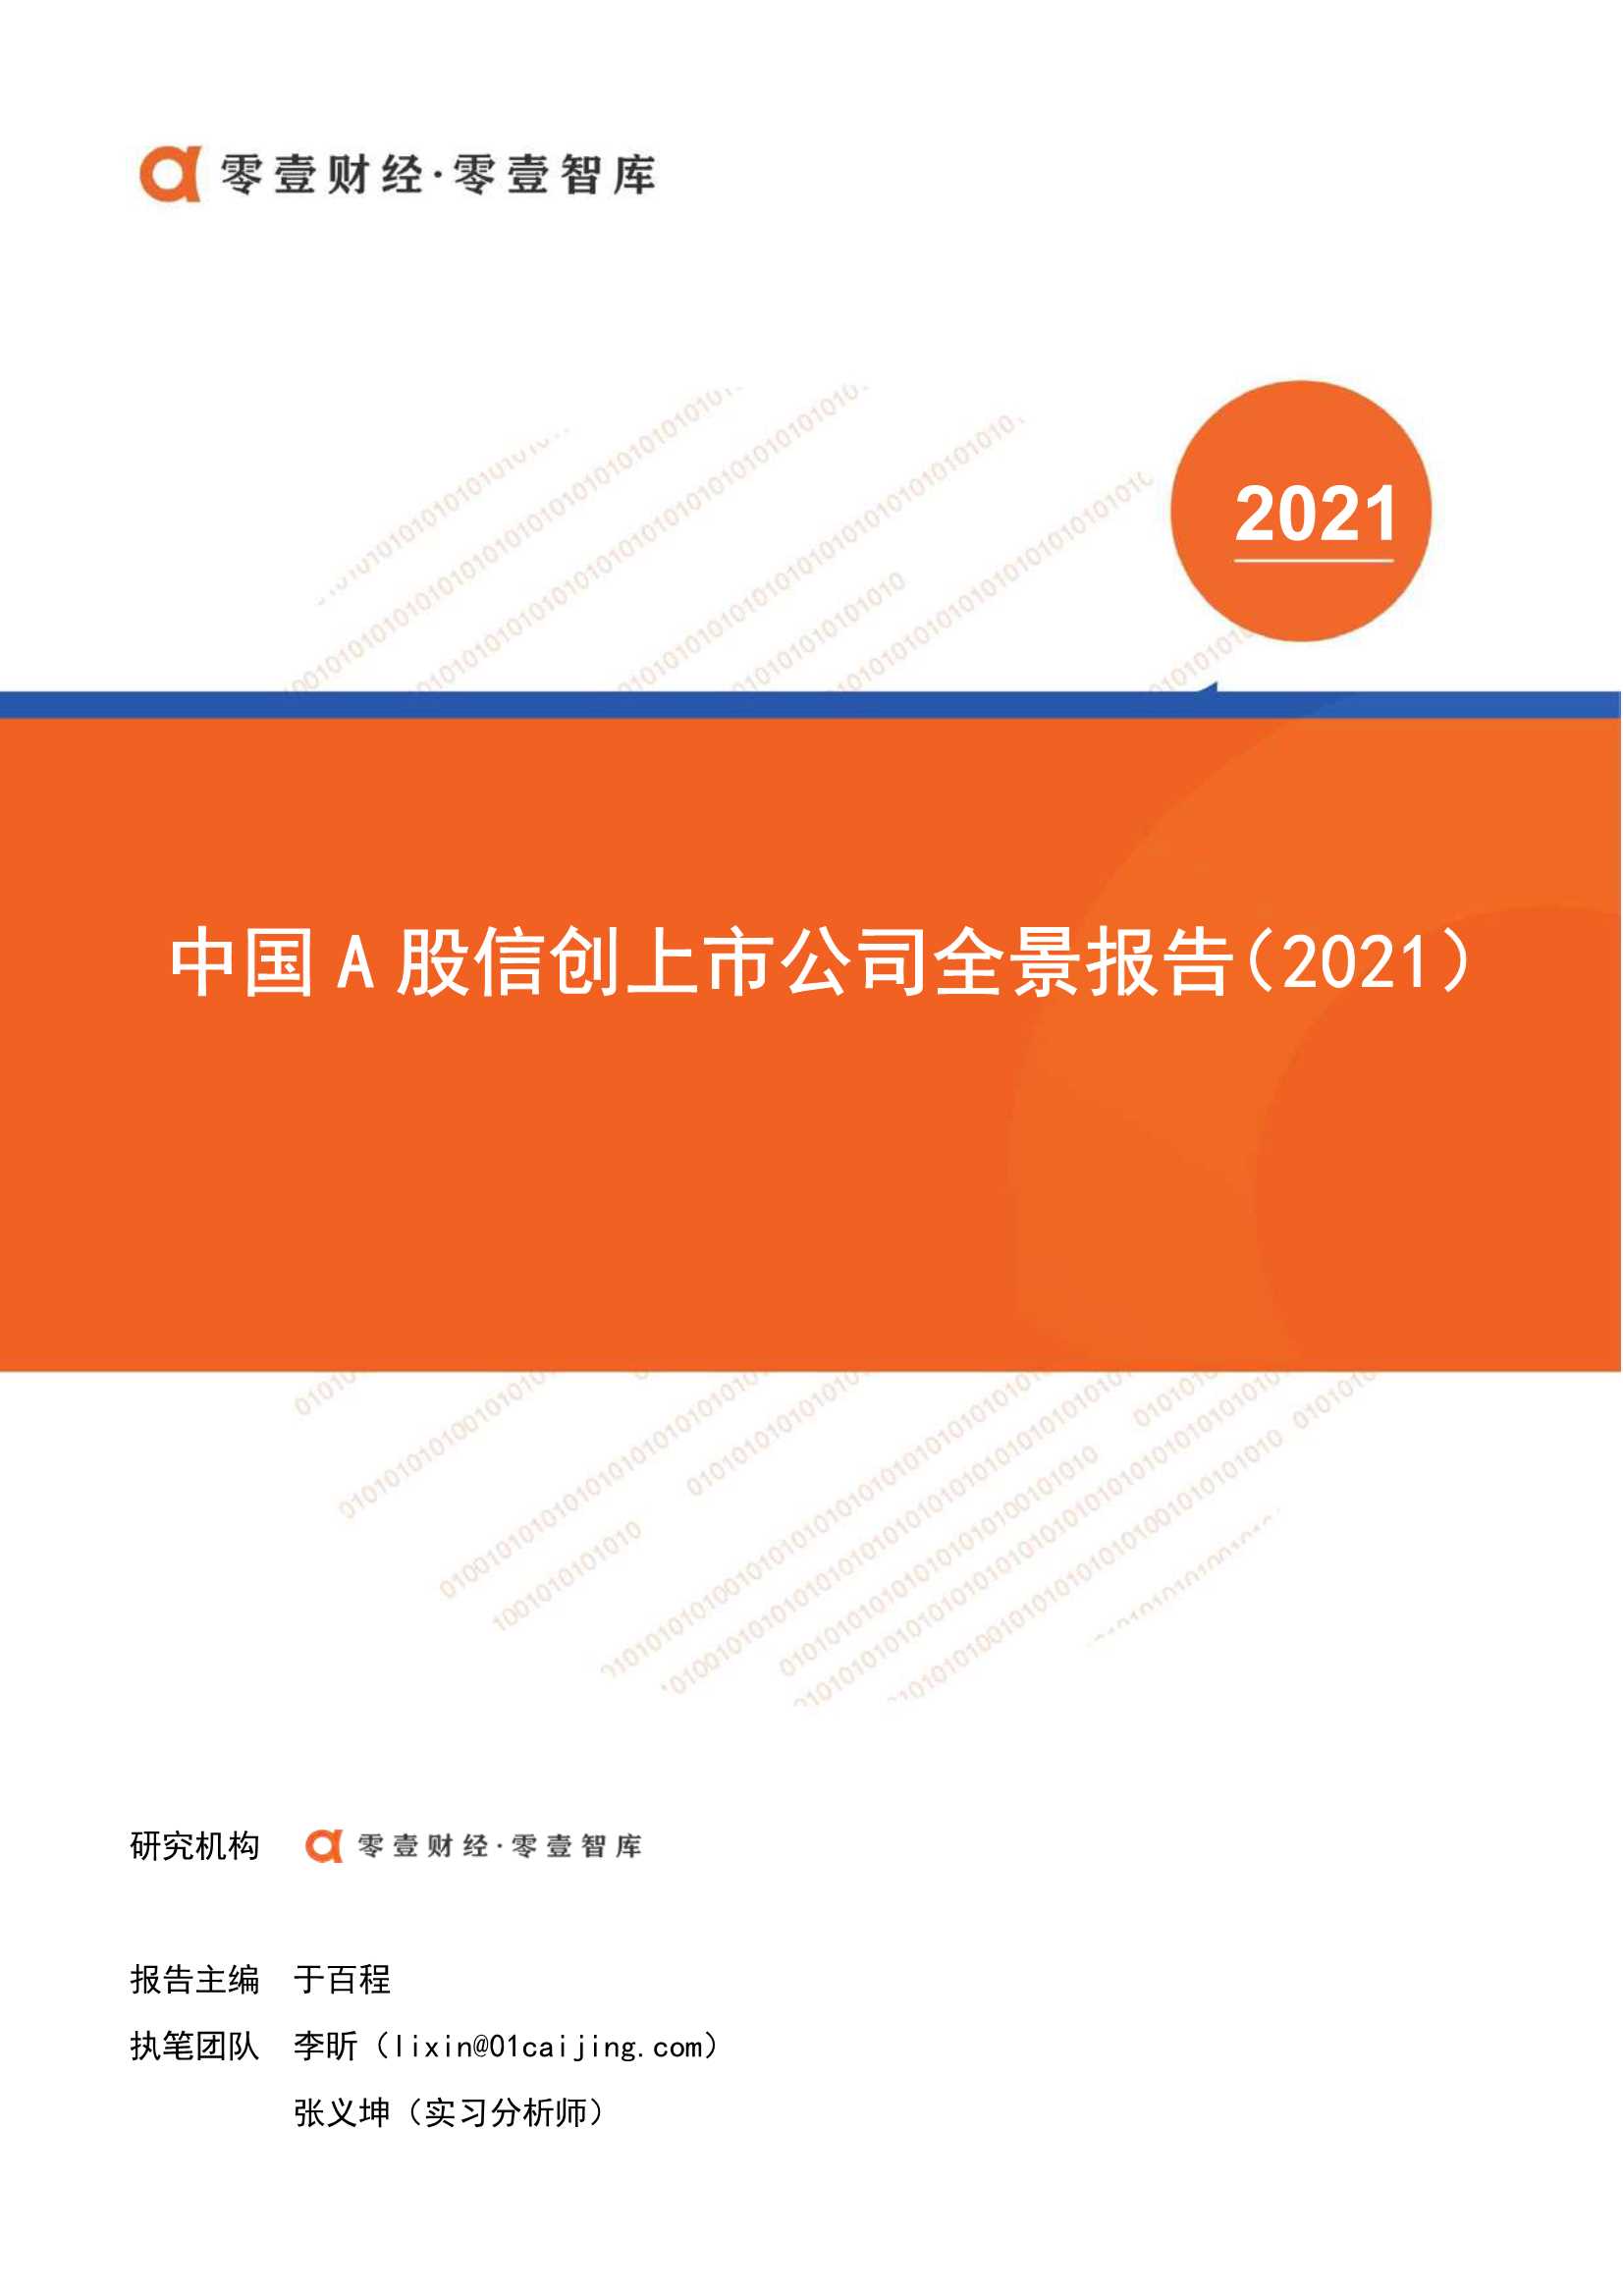 零壹智库-中国A股信创上市公司全景报告(2021)-2021.12-24页